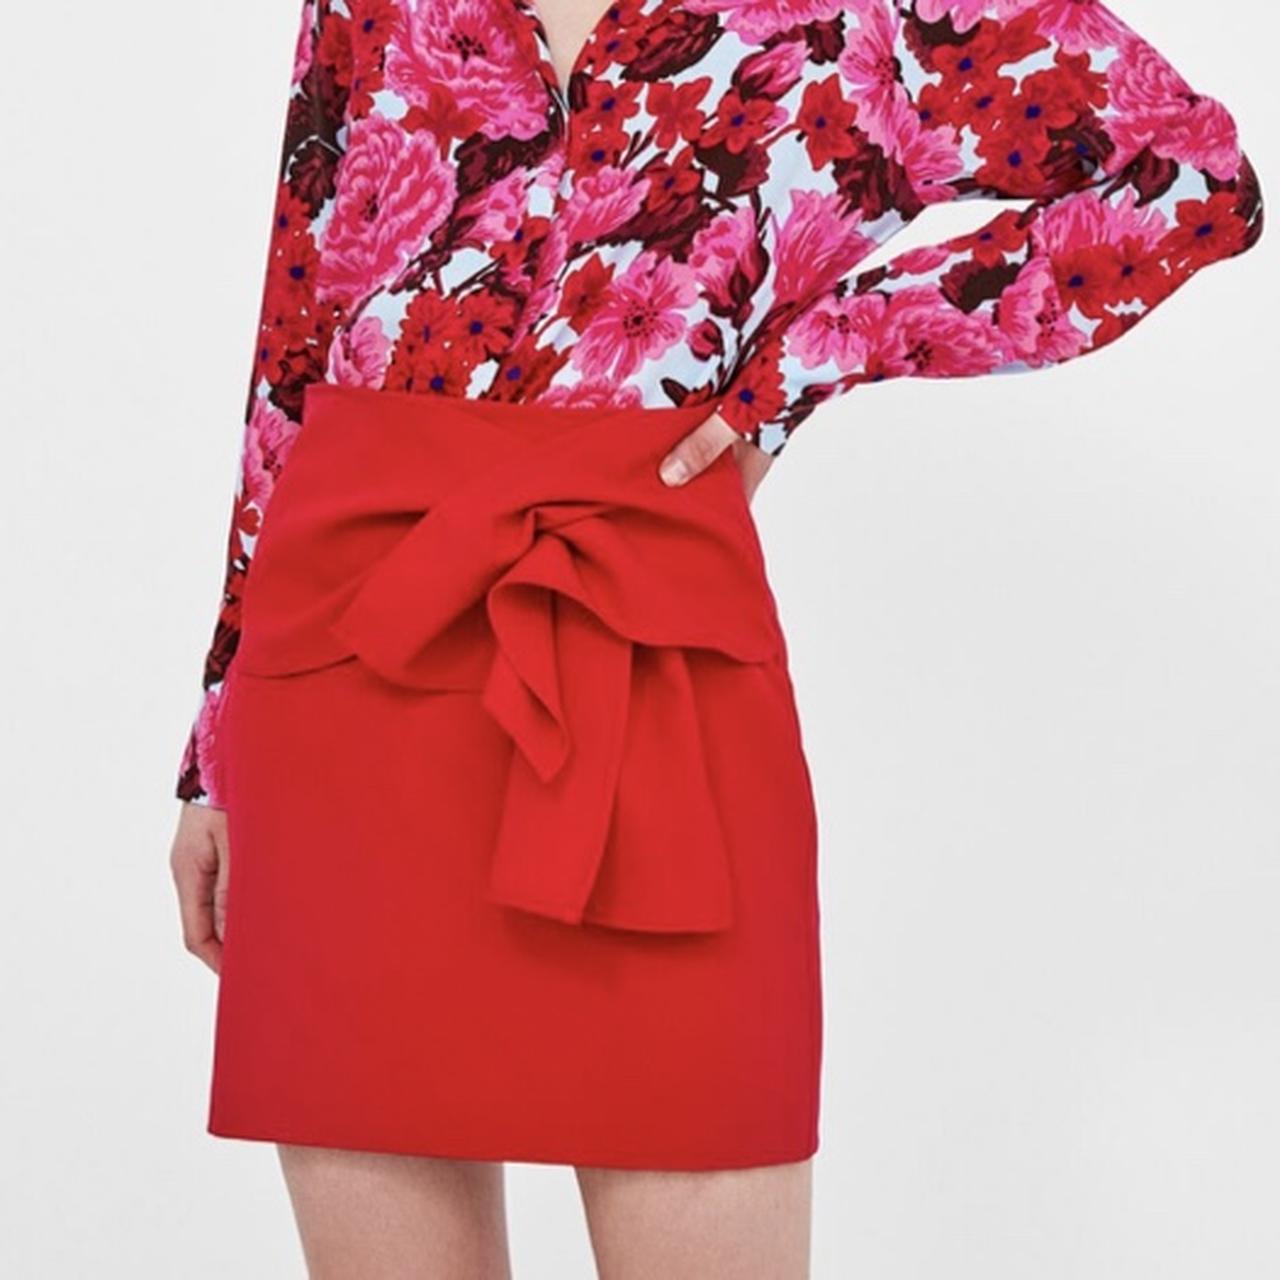 Zara Women's Skirt | Depop